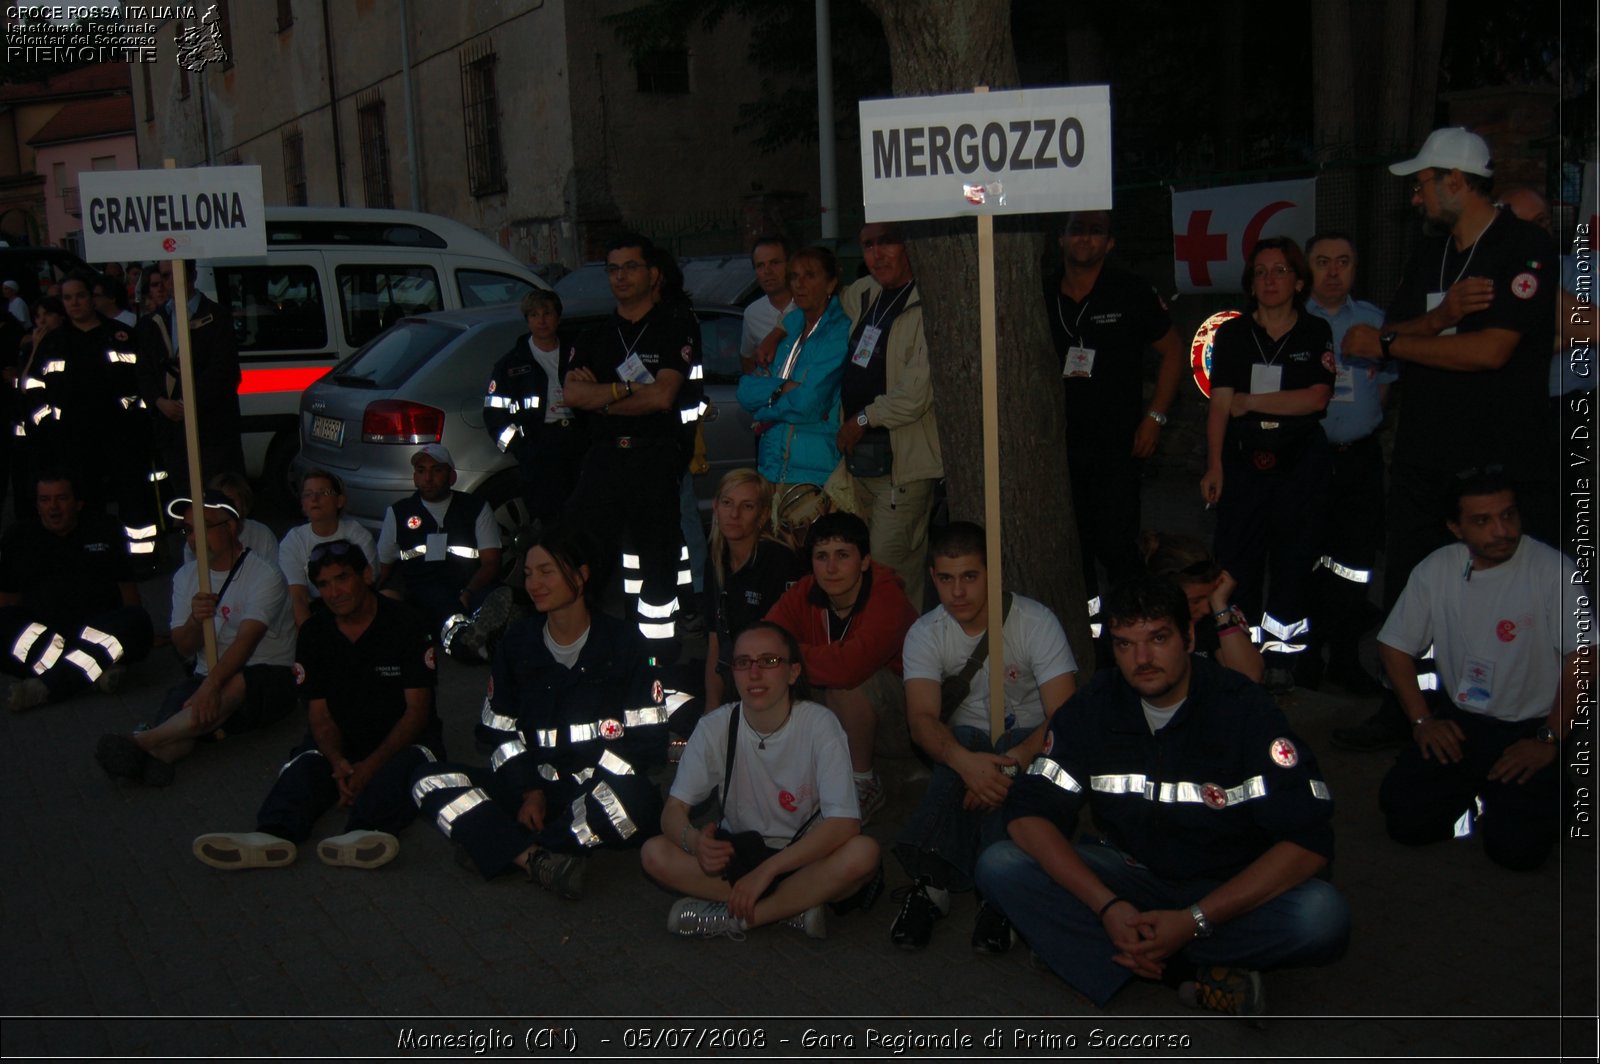 Monesiglio (CN)  - 05/07/2008 - Gara Regionale di Primo Soccorso -  Croce Rossa Italiana - Ispettorato Regionale Volontari del Soccorso Piemonte